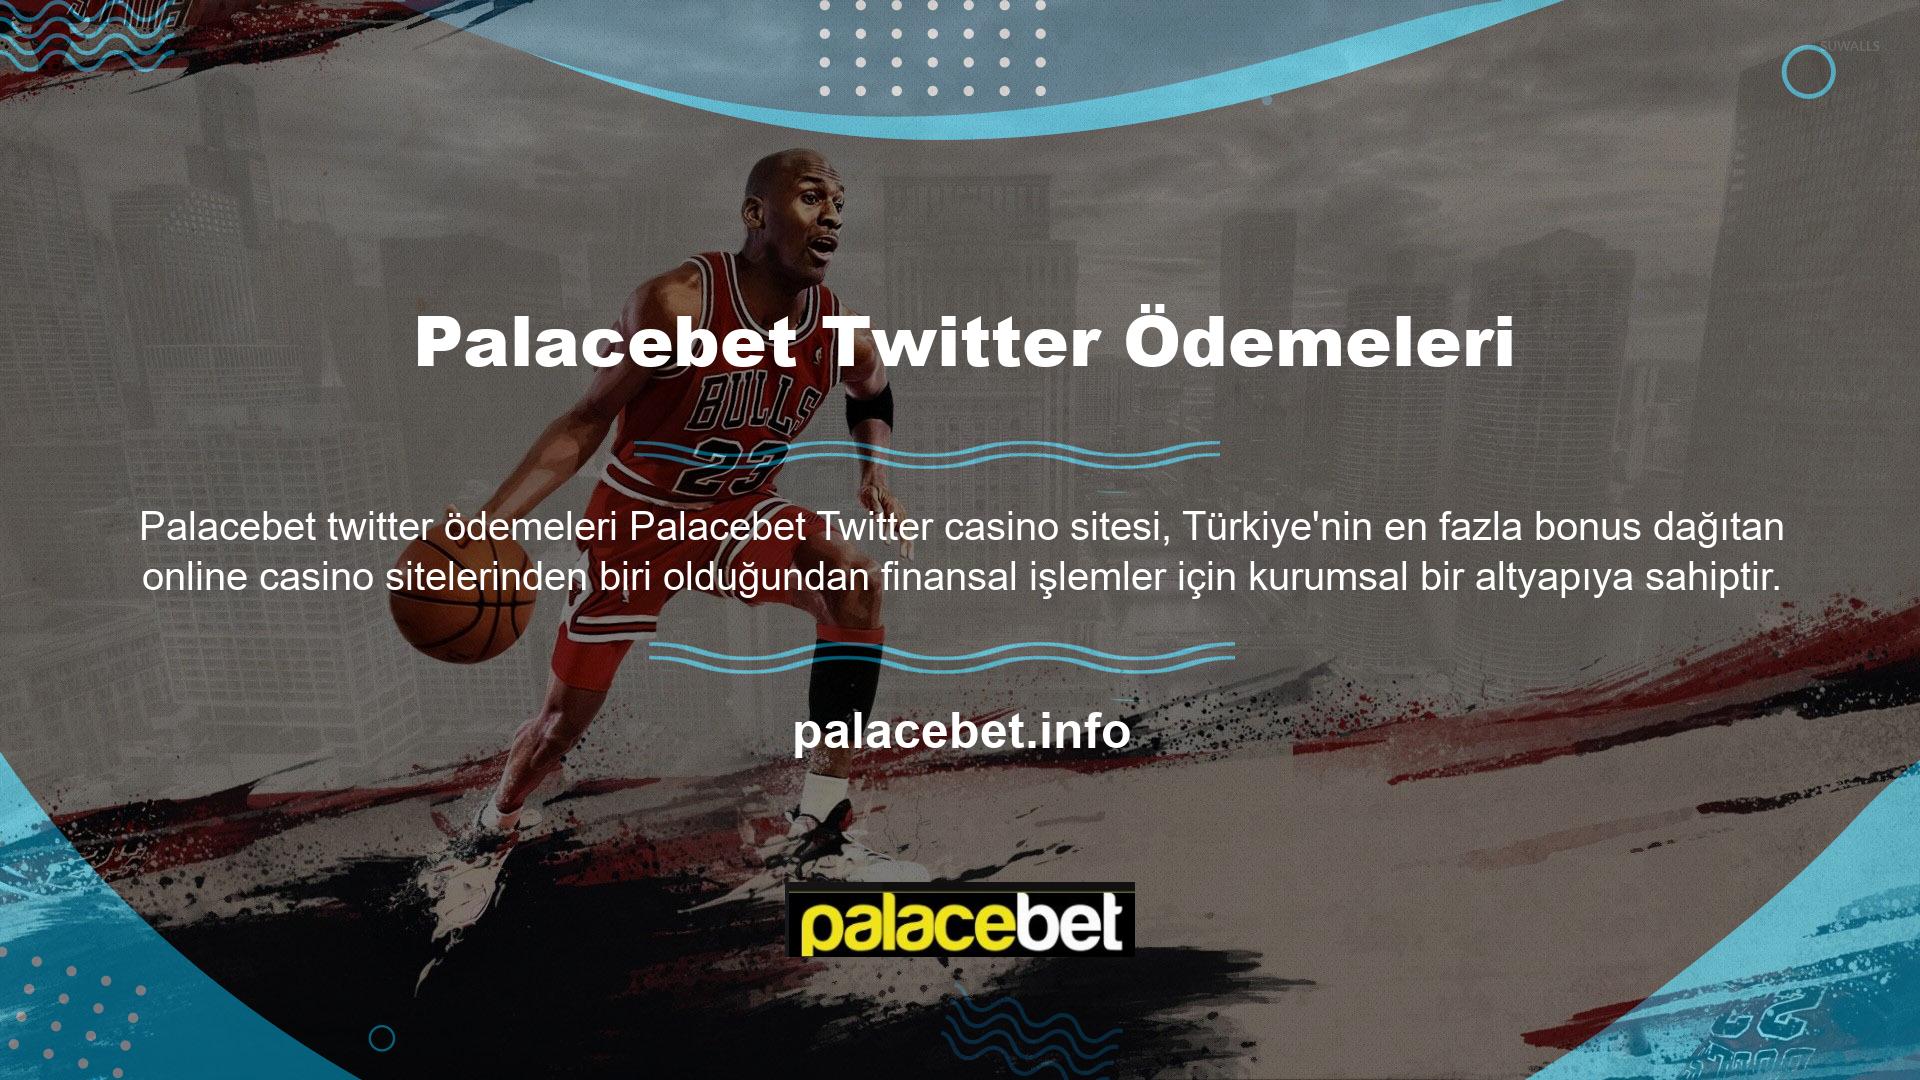 Palacebet lisanslı olarak online casino pazarında faaliyet göstermektedir ve Twitter, casino tutkunlarının muhtemelen en önemli konusu olan para çekme işlemleri için güvenilir bir adres olmayı başarmıştır